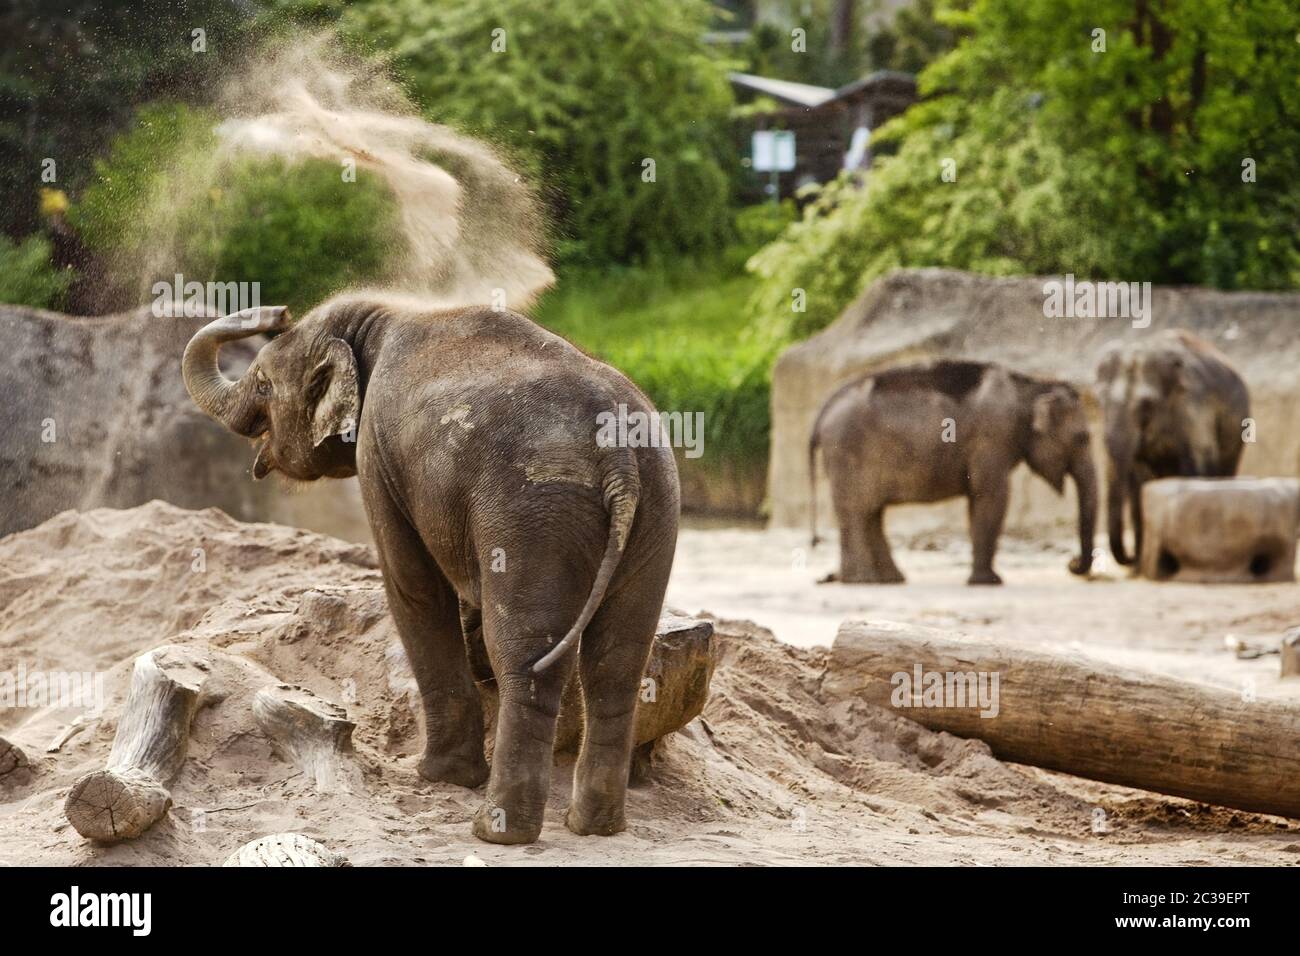 Asian elephant (Elephantidae), zoo, Cologne, Rhineland, North Rhine-Westphalia, Germany, Europe Stock Photo